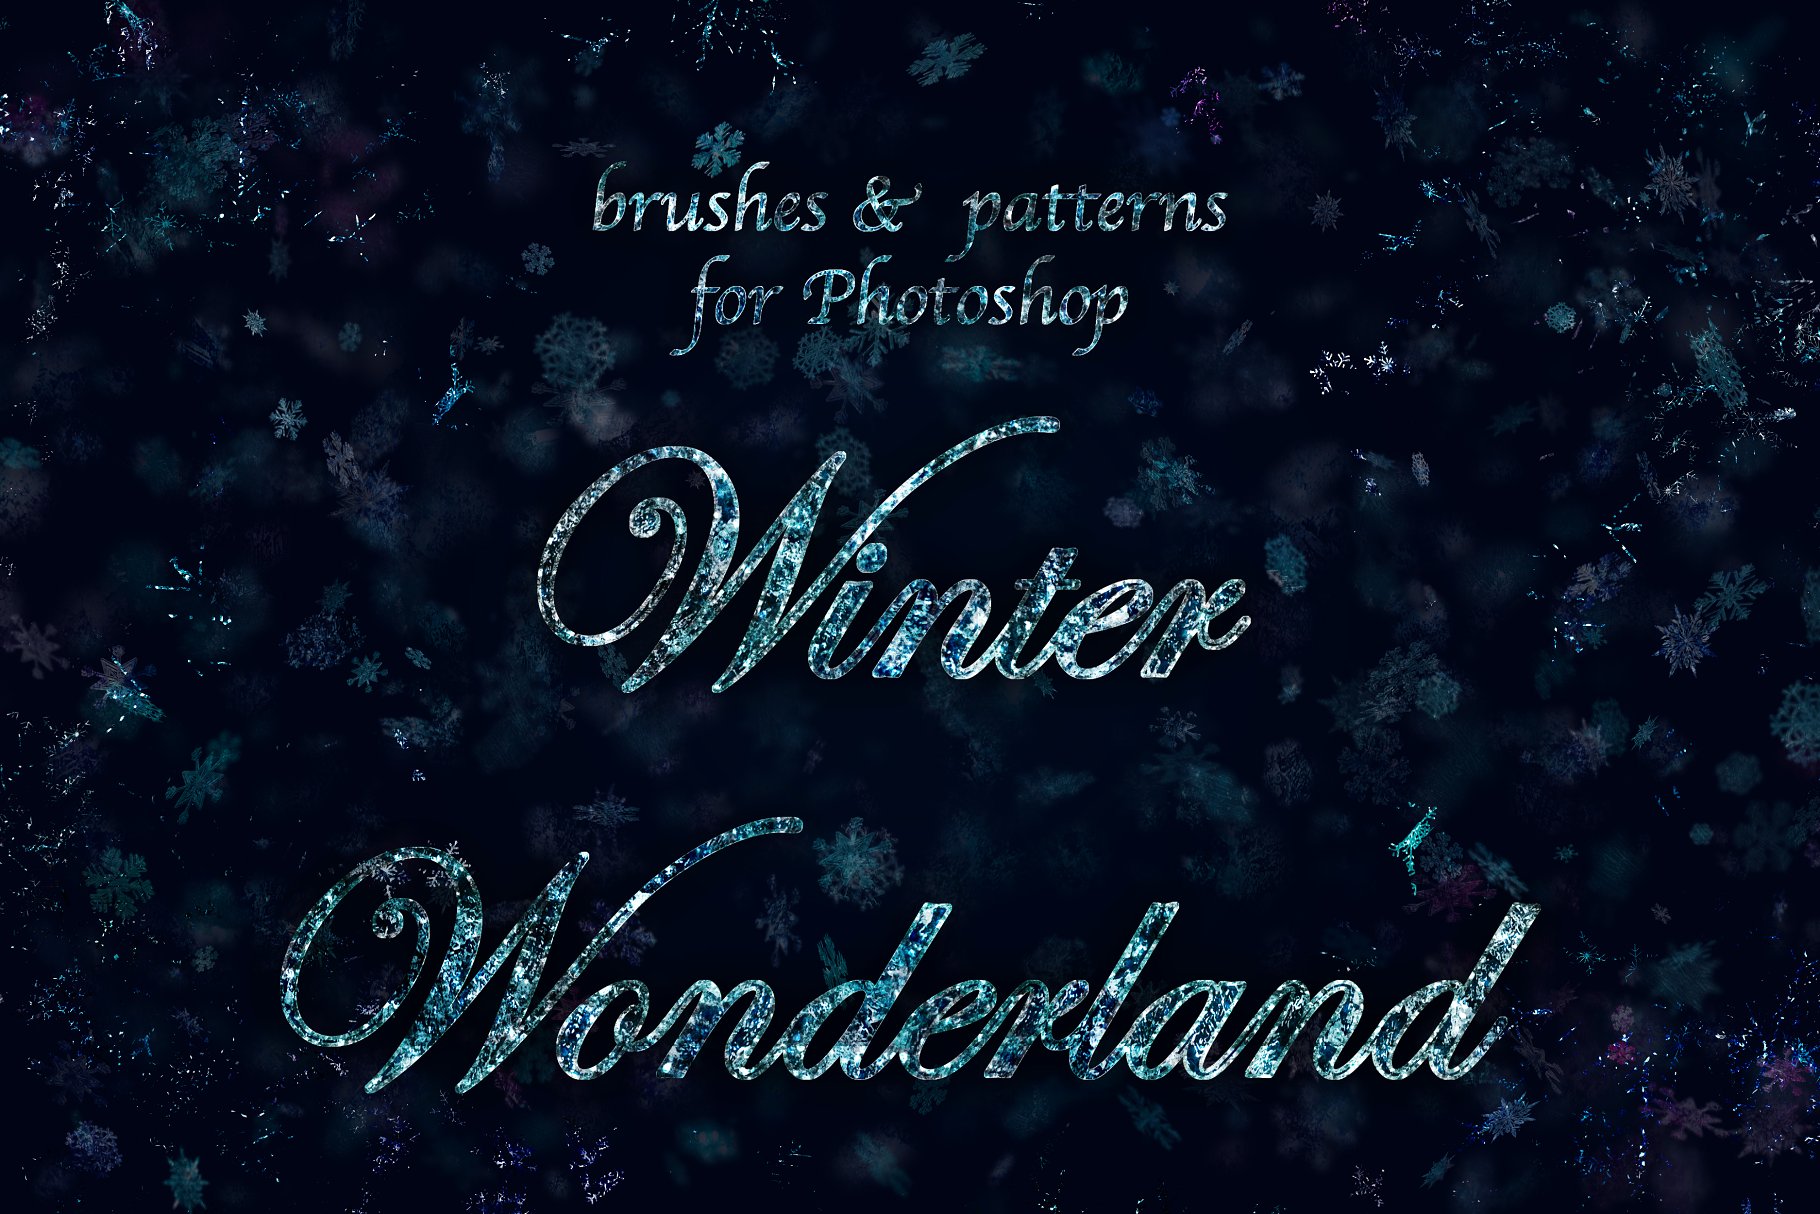 冰雪奇缘冬天主题纹理&笔刷合集[雪花、冰花&闪光] Winter Wonderland for Photoshop插图